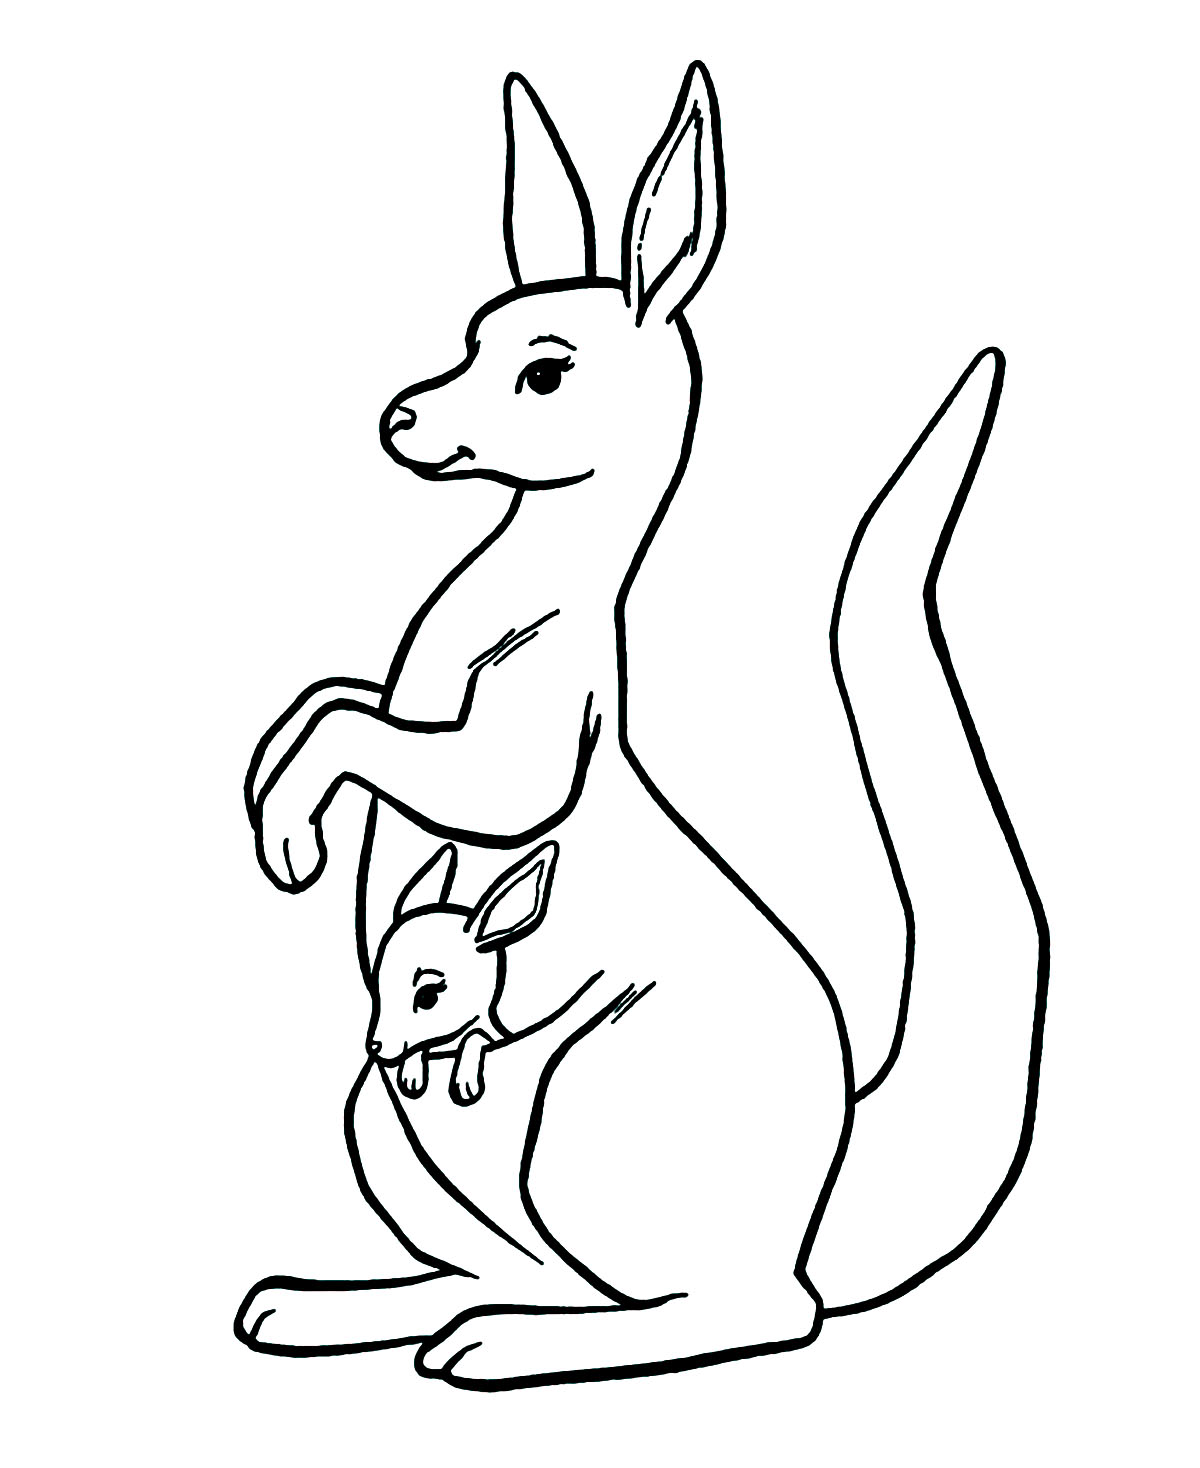 Kangaroo in the pocket   Kangaroos Kids Coloring Pages